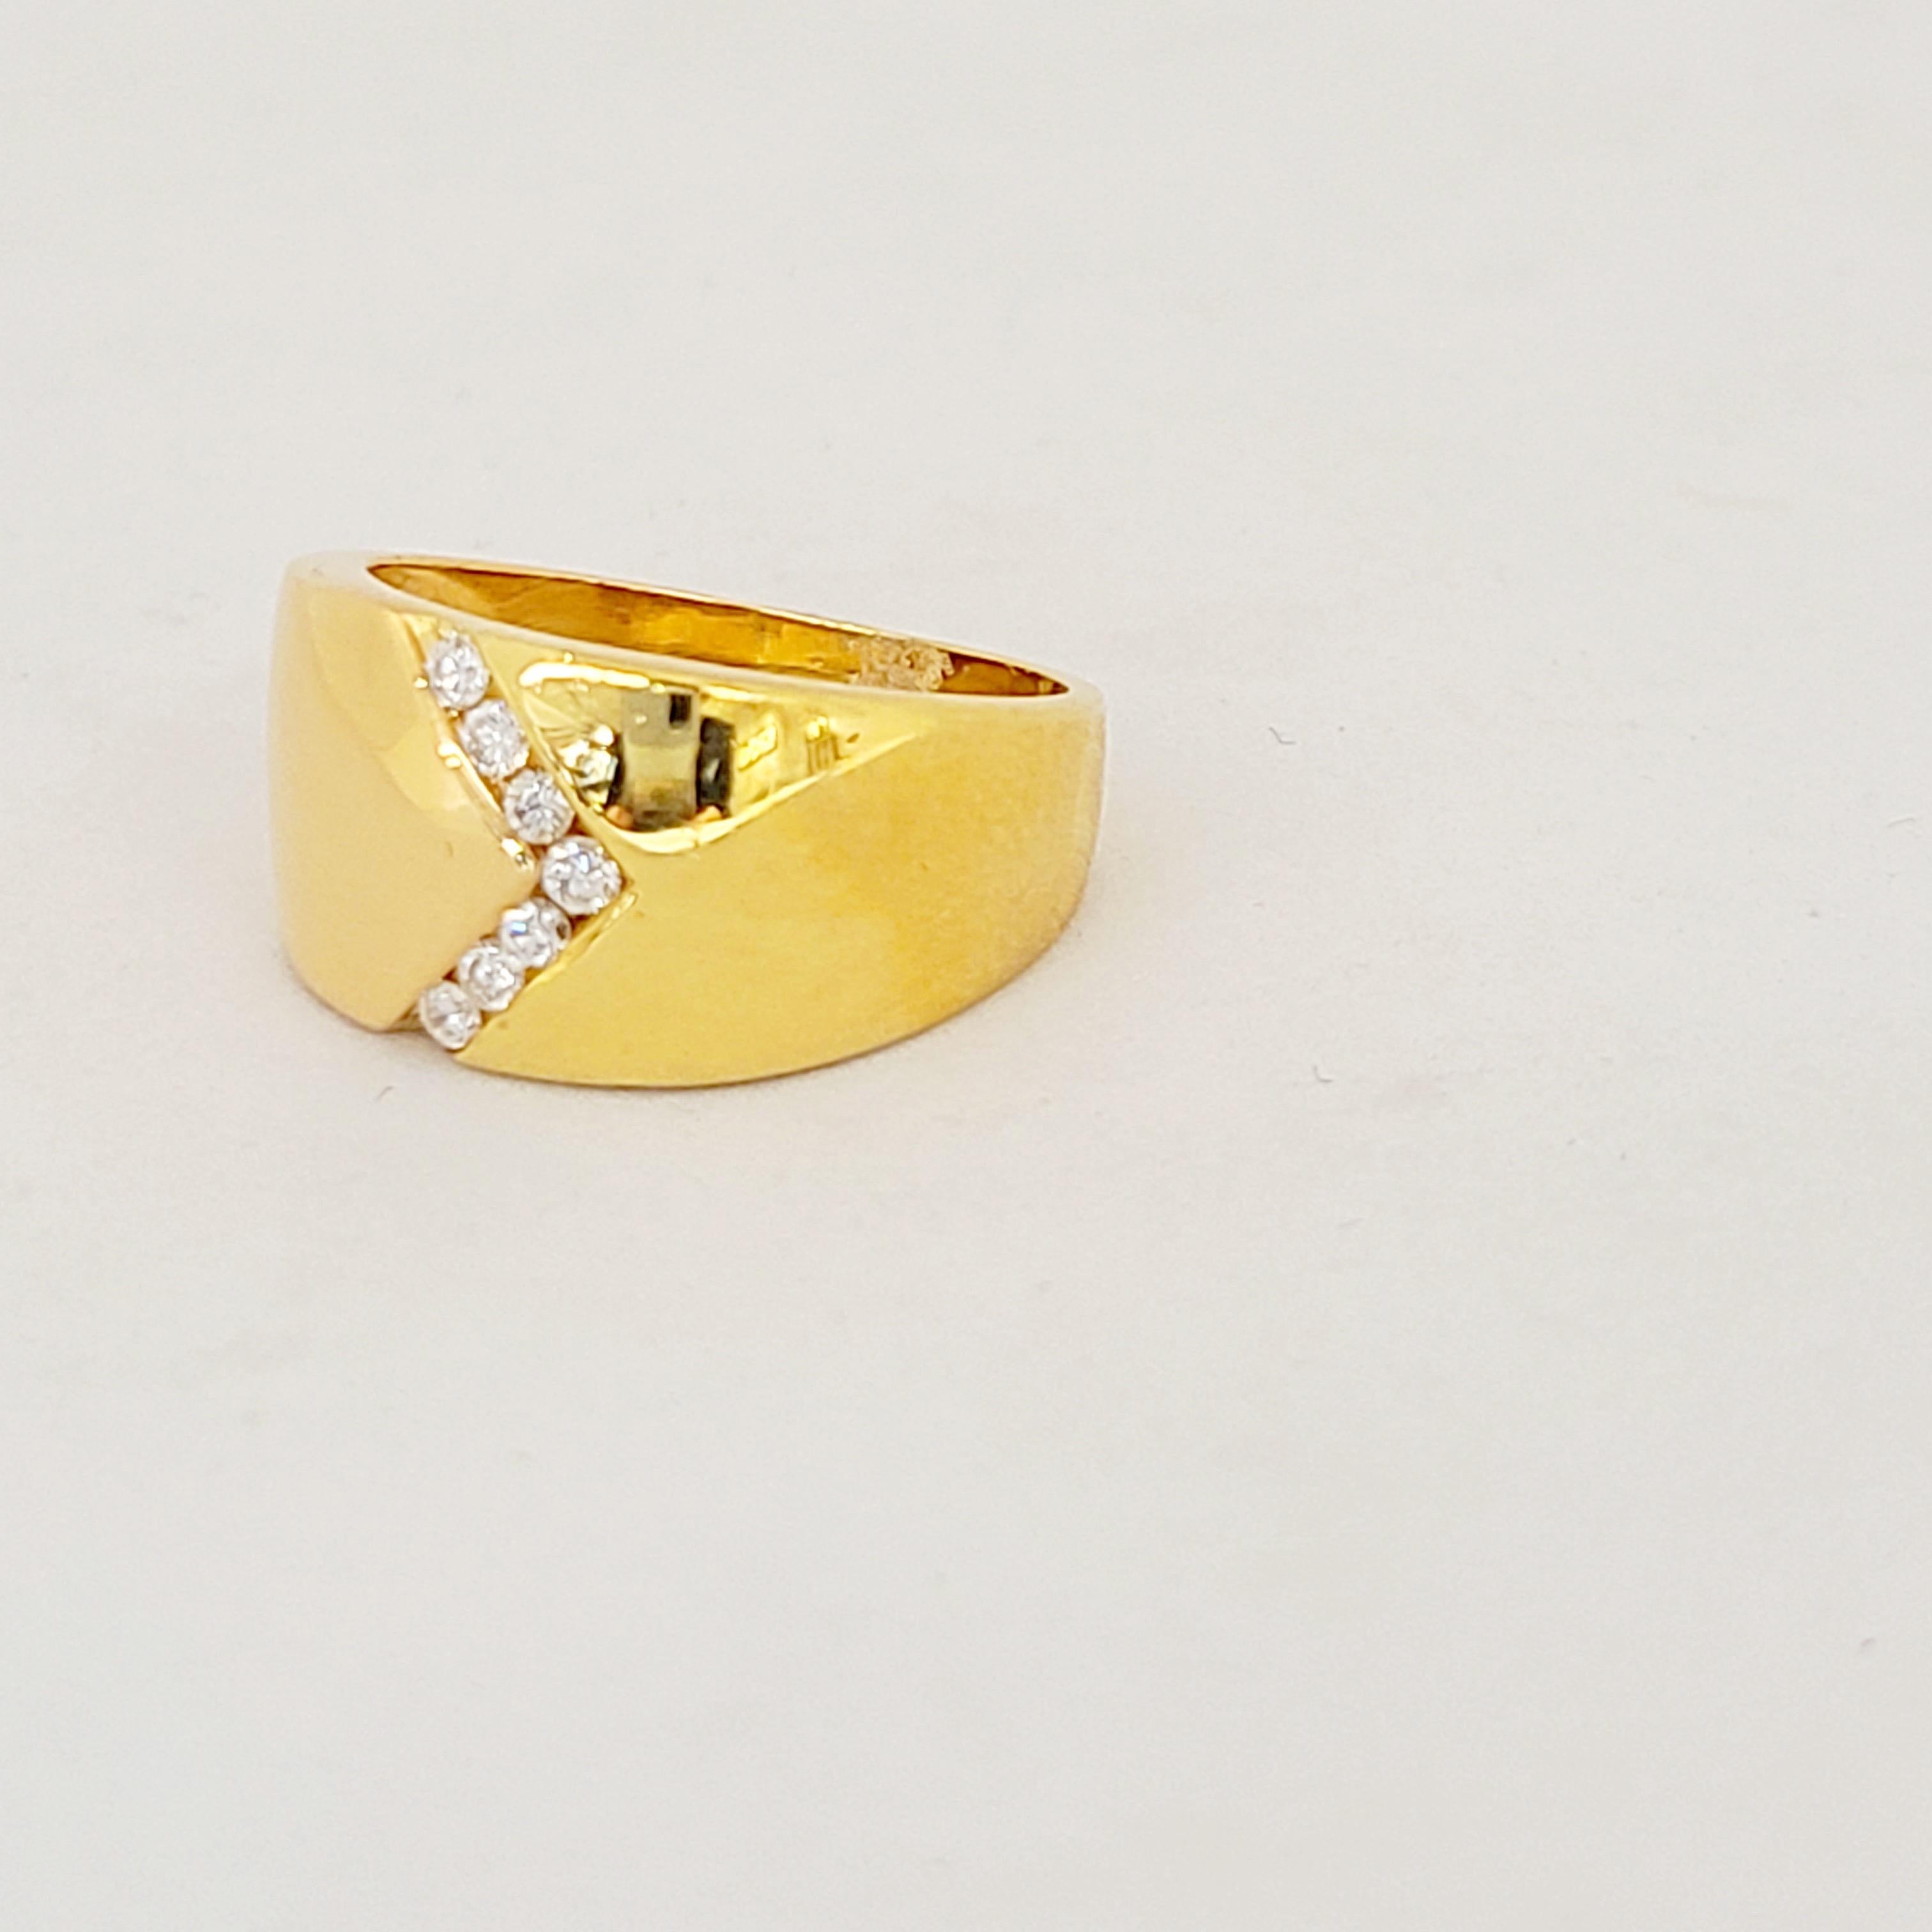 Jolie et brillante bague en or jaune 18kt sertie de 7 diamants ronds de taille brillant dans un motif en V.
Poids du diamant 0,21 carats
Estampillé 750
Taille 7.5 disponible